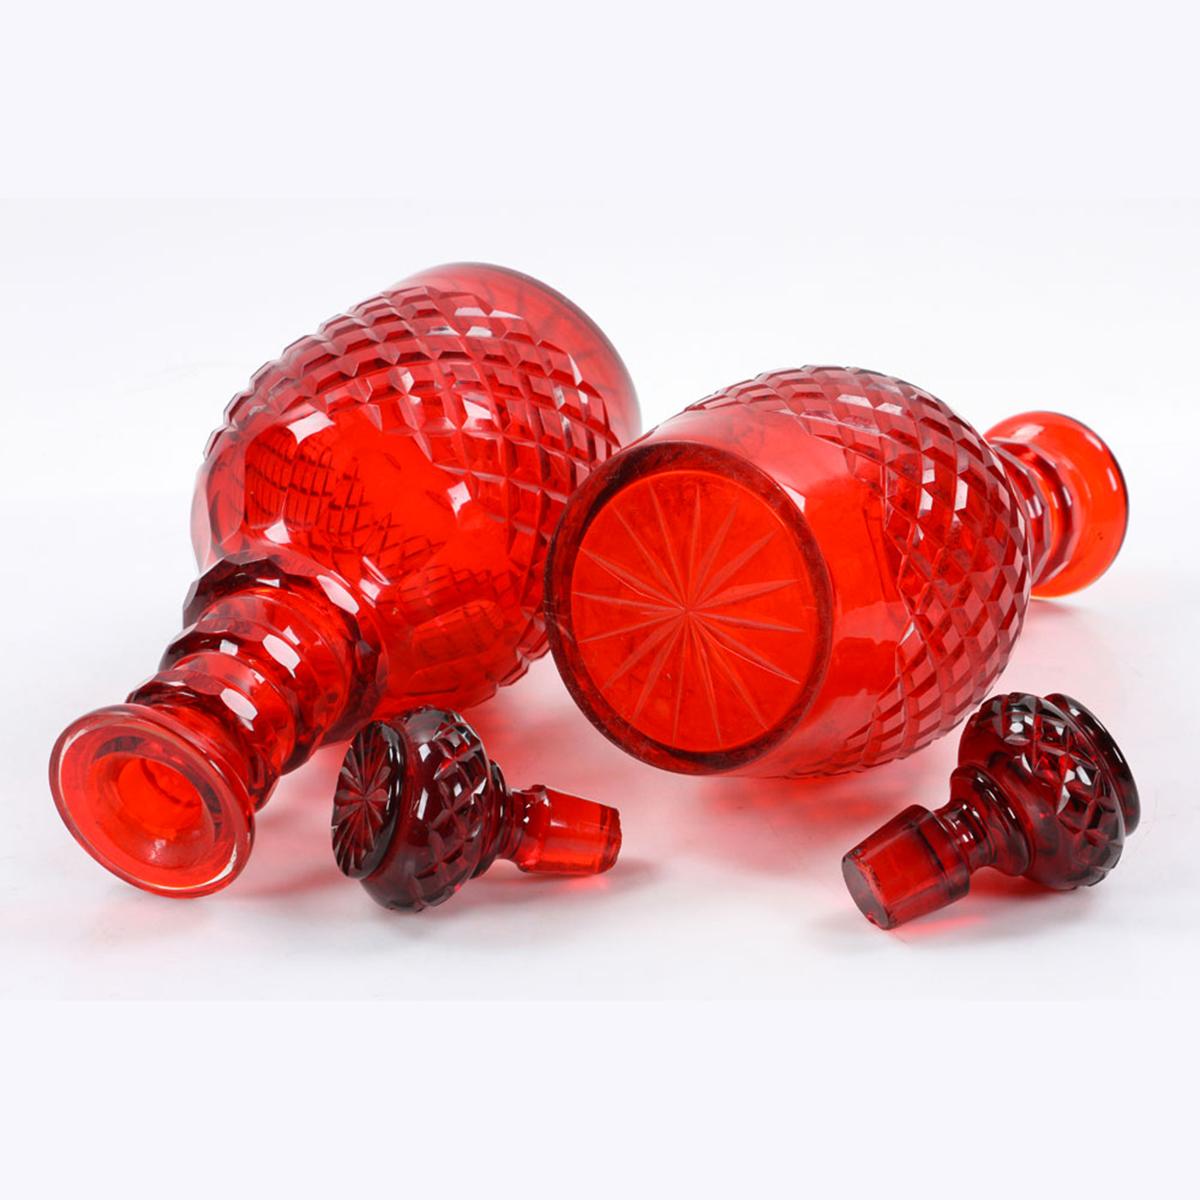 Czech Fabulous Pair of Bohemian Cut Glass Ruby Decanters